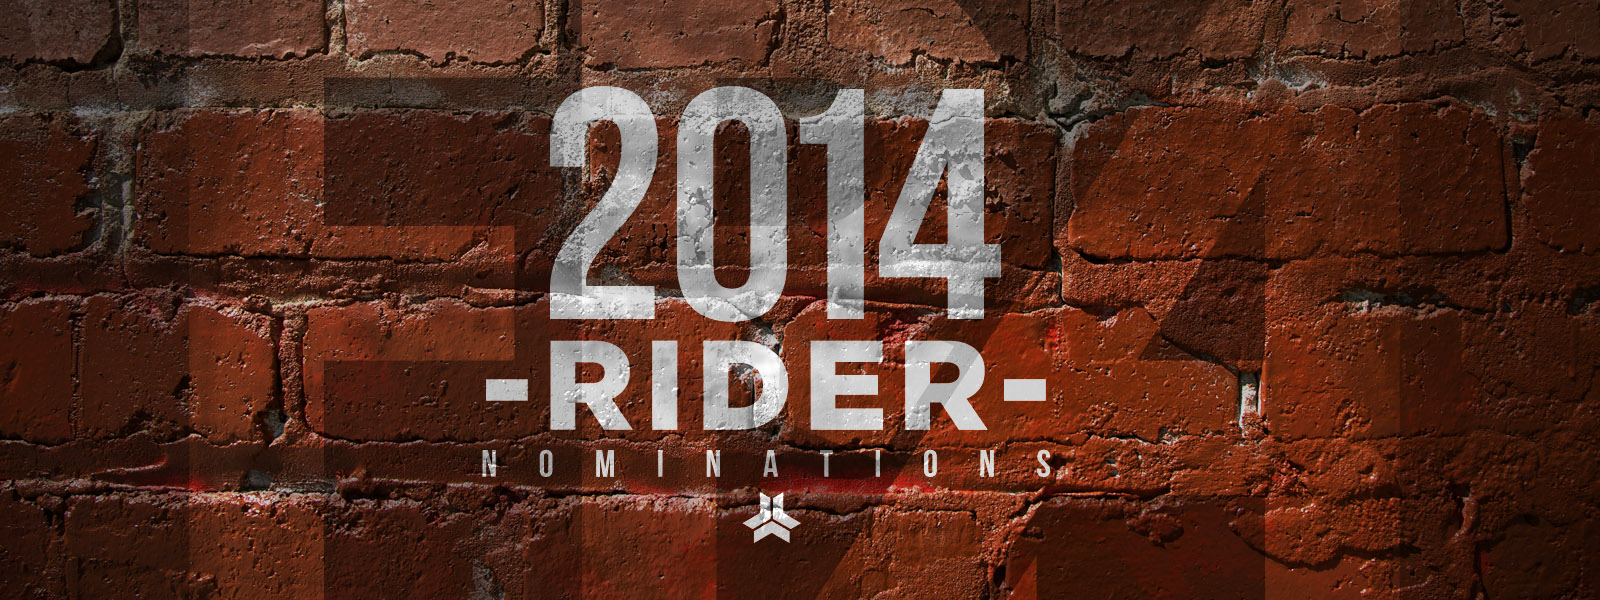 2014 Rider Nominations